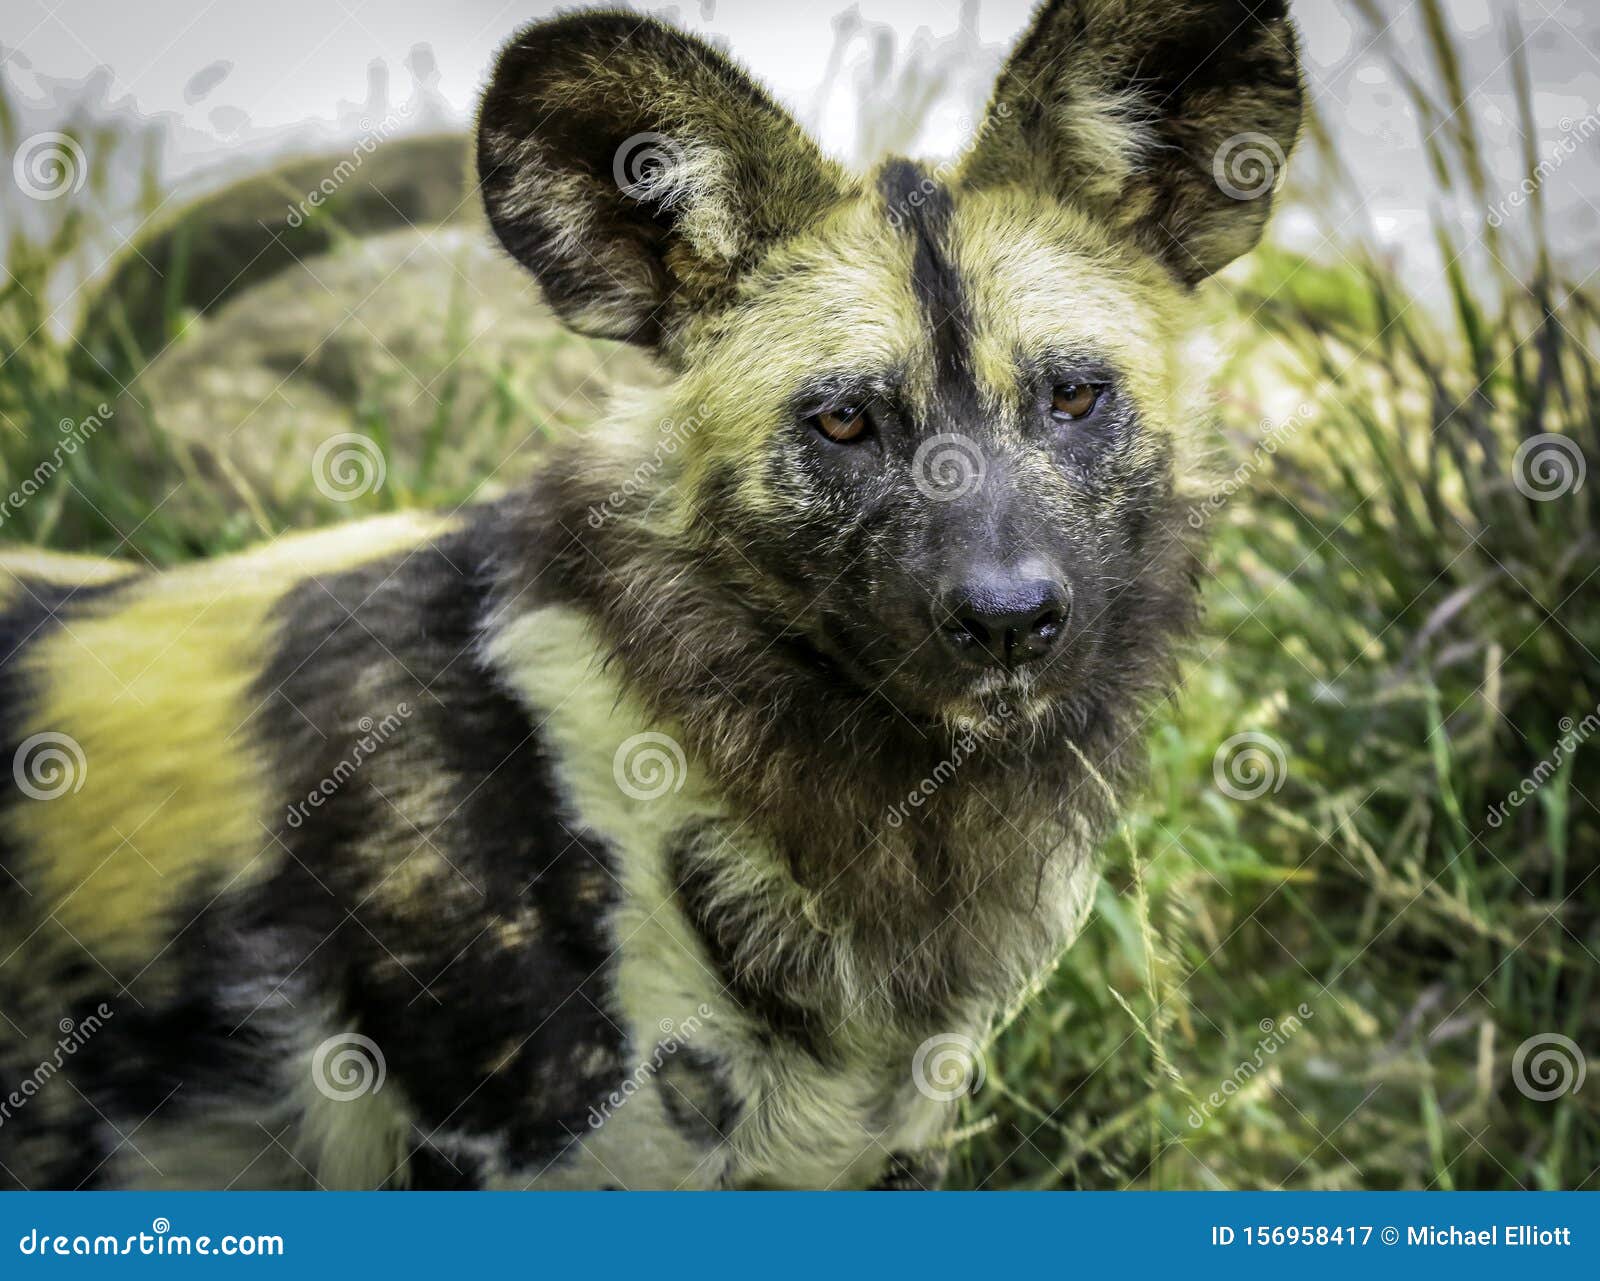 埃塞俄比亚狼犬是一种生活在埃塞俄比亚高地的濒危犬种 库存图片. 图片 包括有 红色, 津贴, 埃塞俄比亚 - 217884125